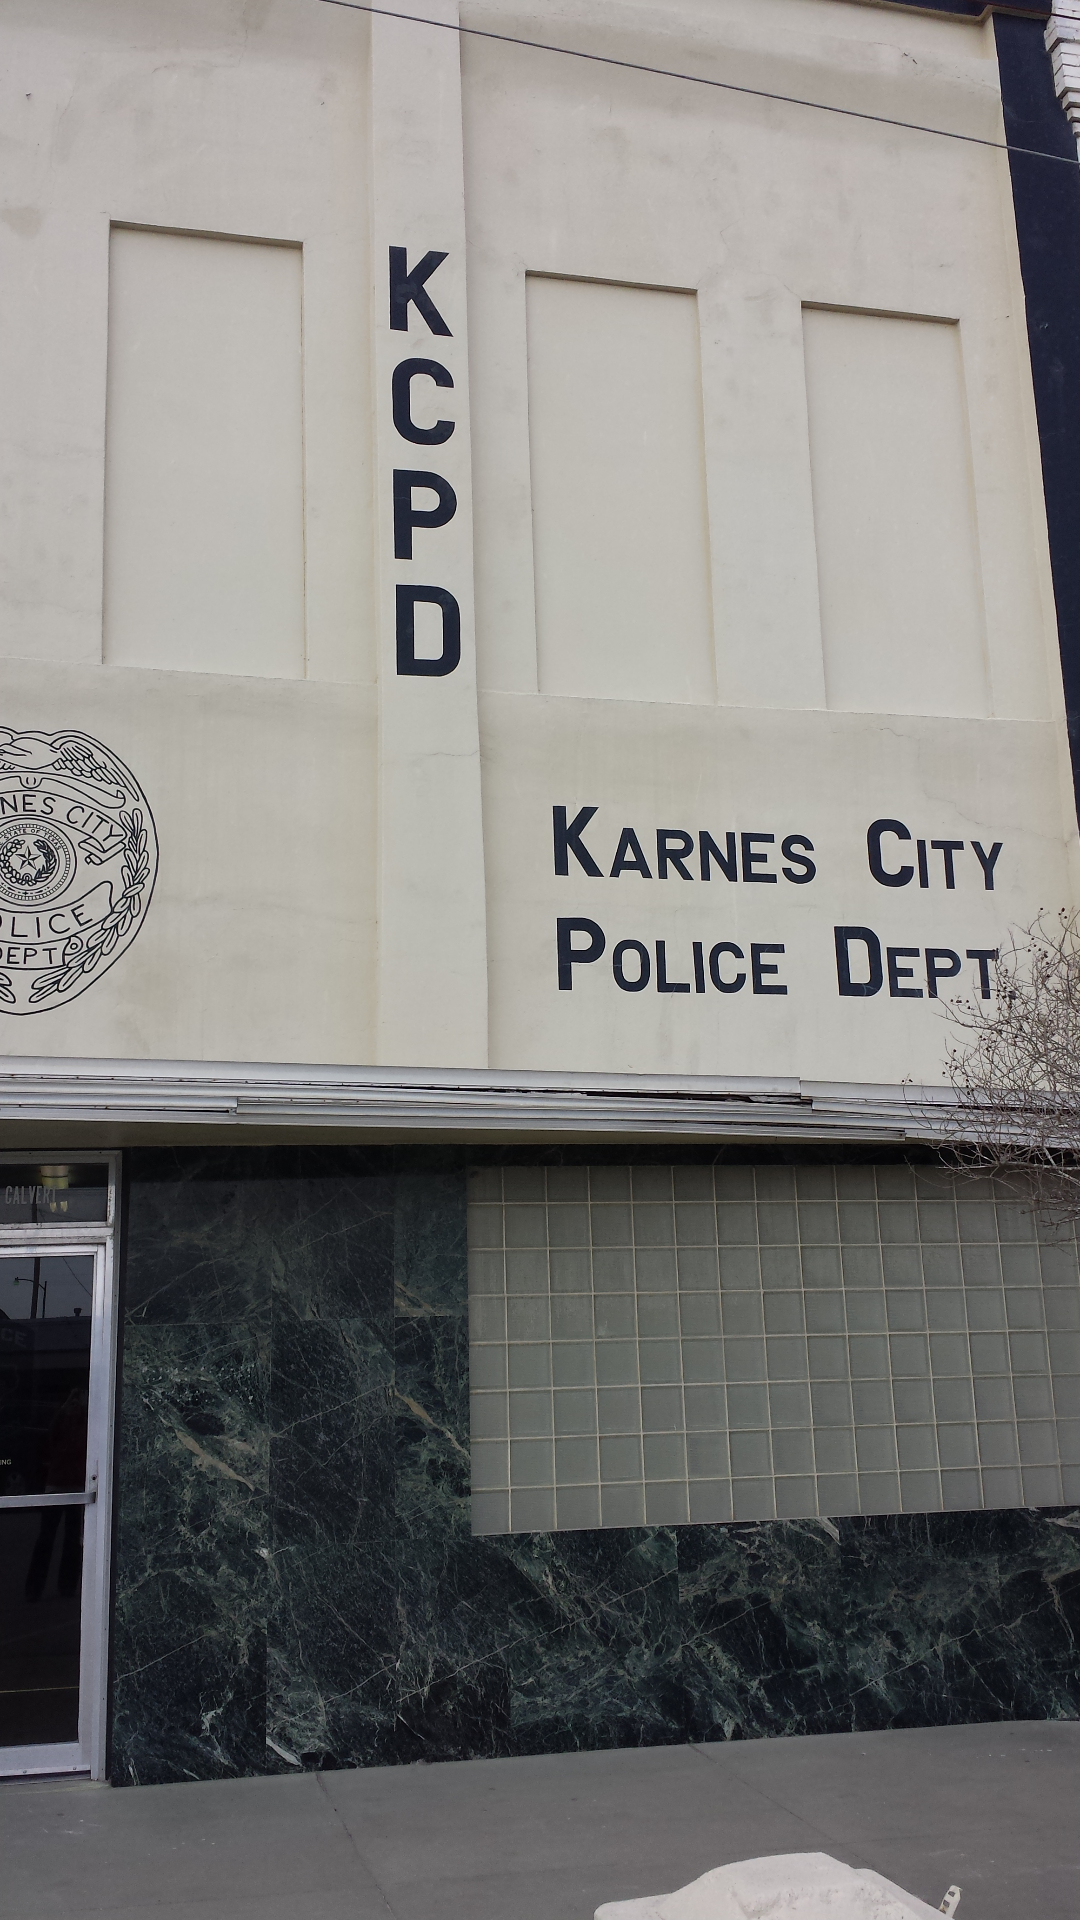 Karnes City Police Department
211 E. Calvert Ave.
Karnes City, TX 78118
830 780-2300 
(non-emergency) 